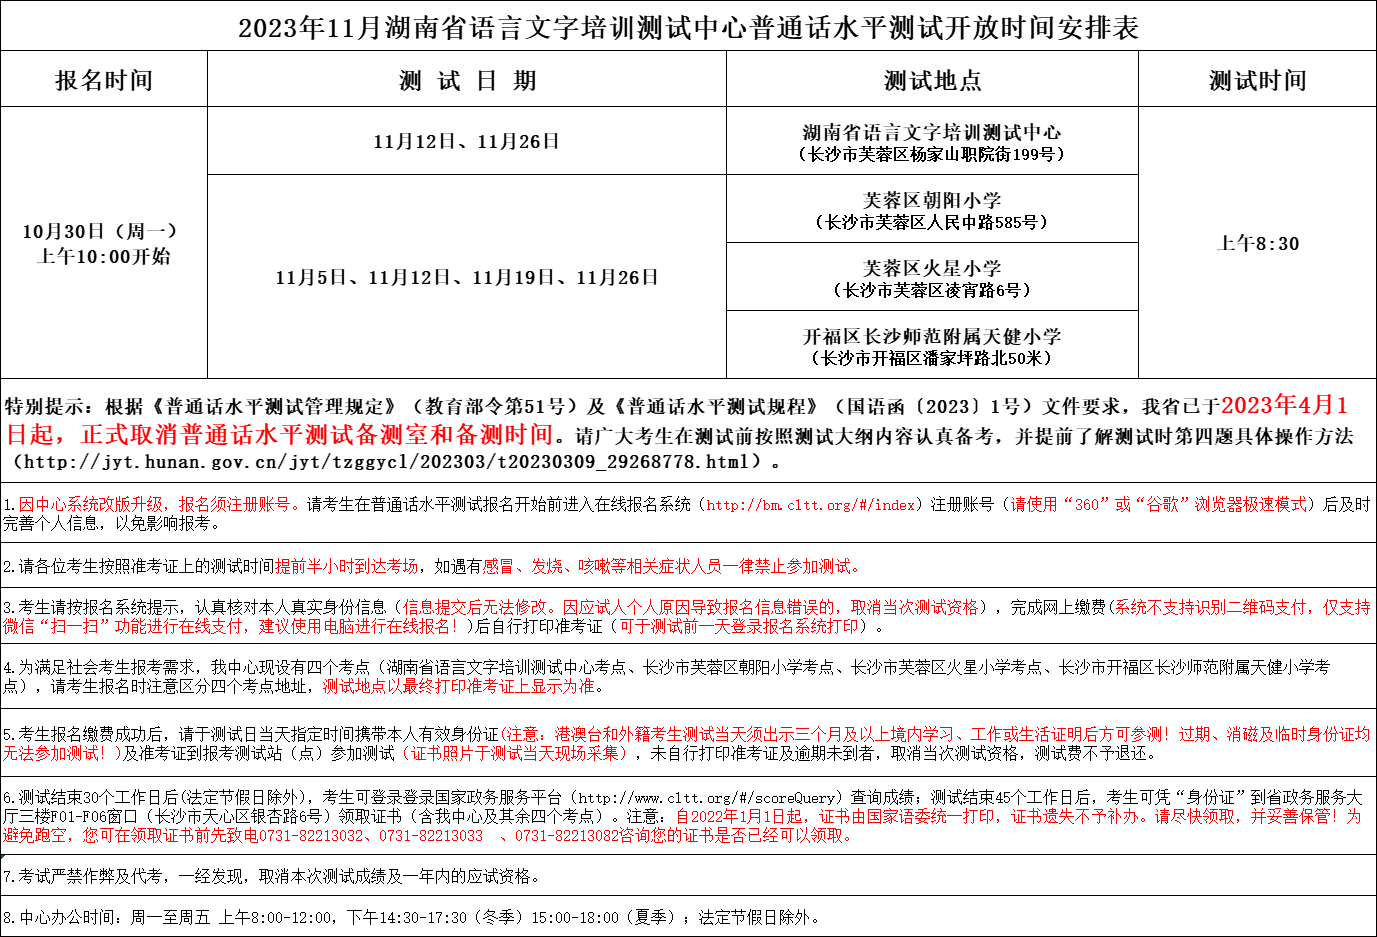 2023年11月湖南省语言文字培训测试中心普通话水平测试开放时间安排表